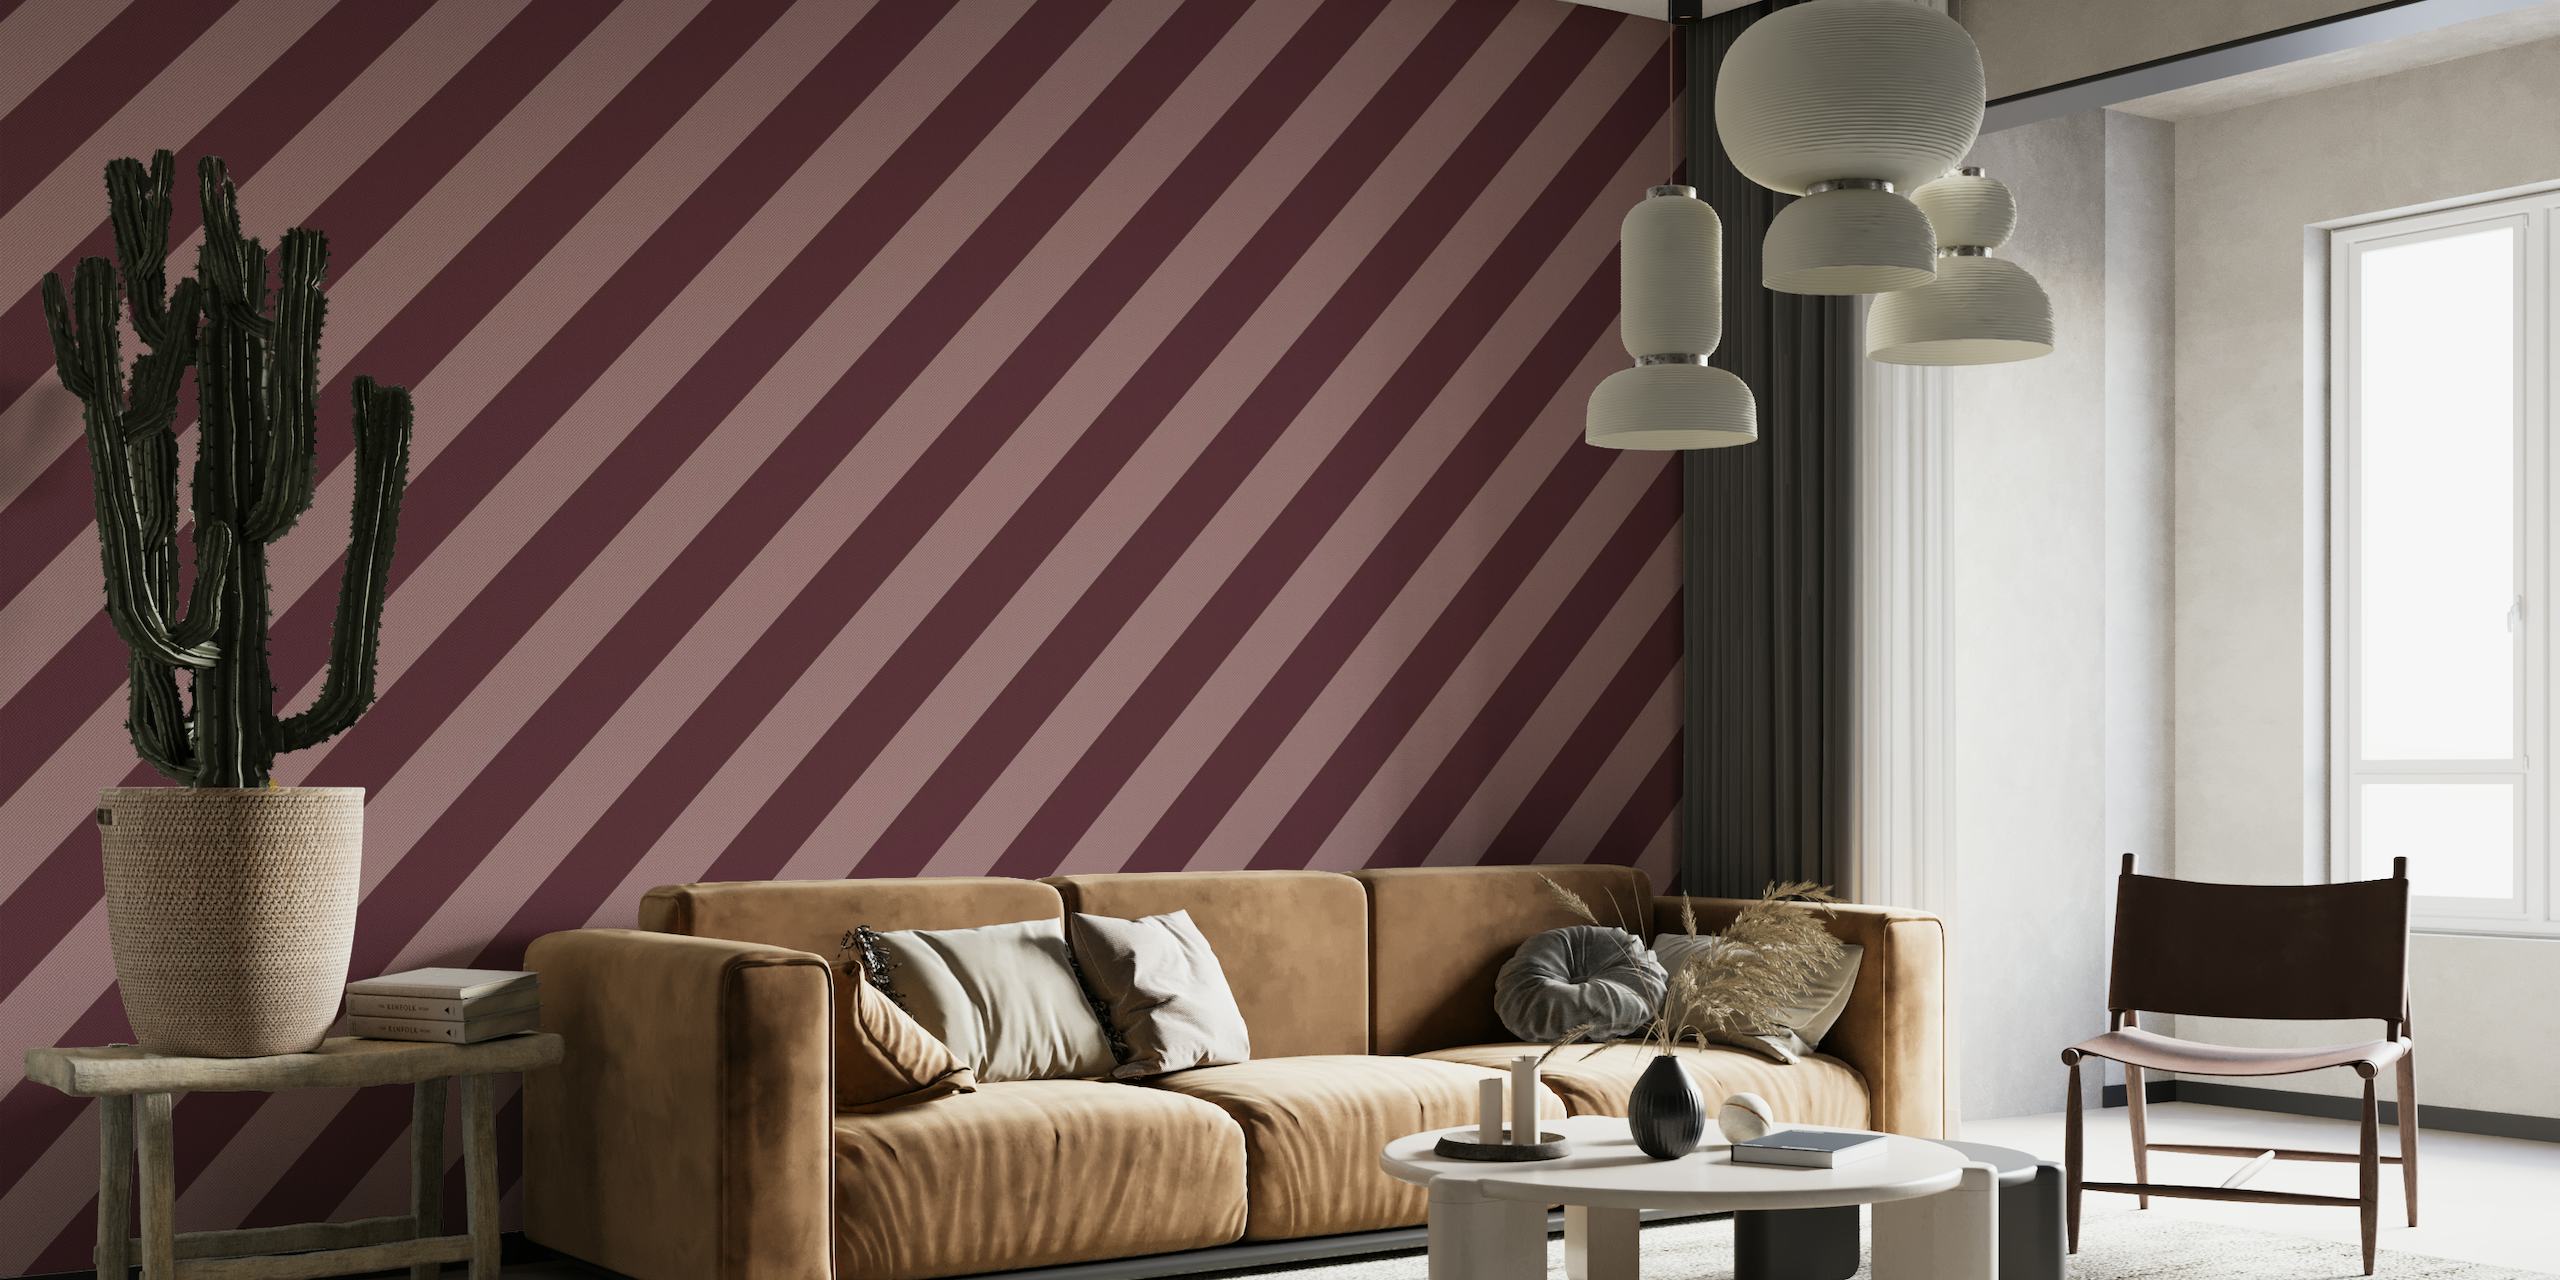 Texturerat diagonalt randmönster i bordeaux- och rosenträfärger för en väggmålning